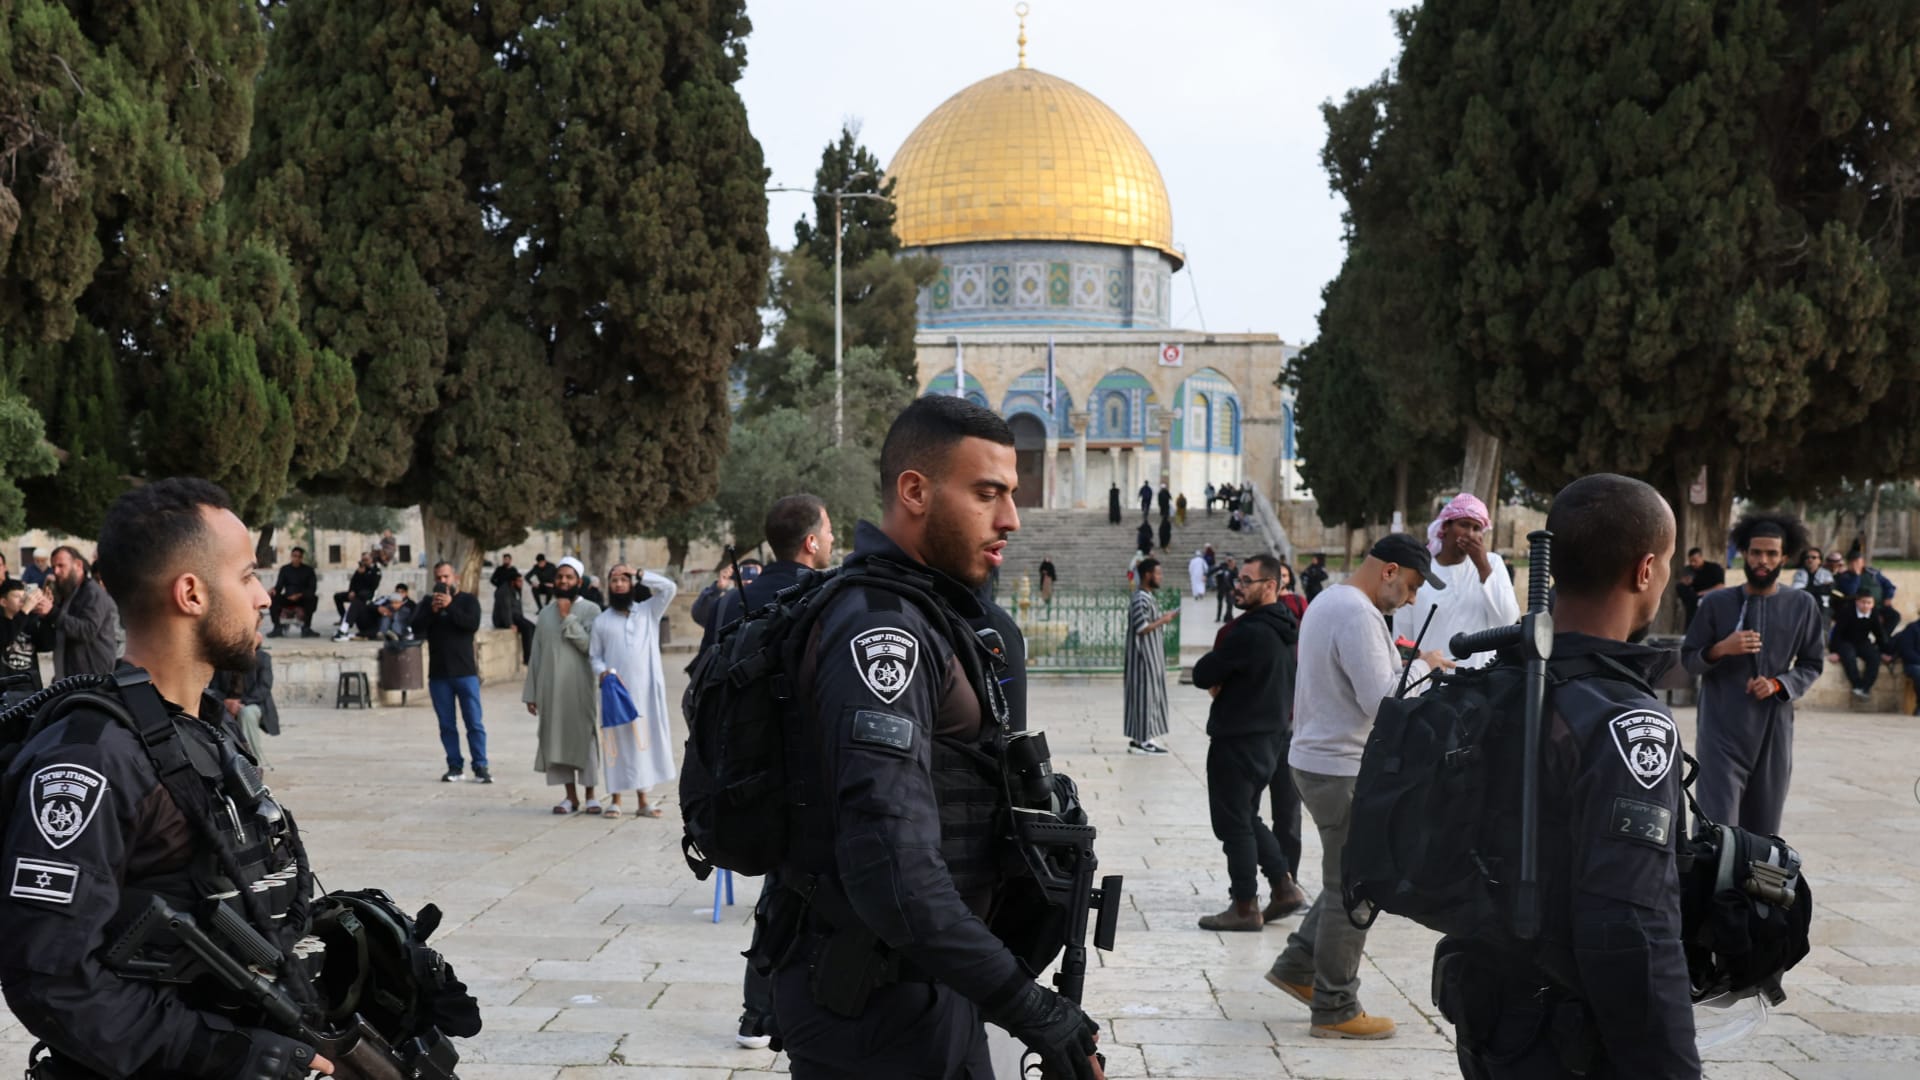 الأردن يحذر إسرائيل من "عواقب وخيمة" إذا اقتحم المسجد الأقصى مرة أخرى.. واسرائيل تطالب الاردن بإبعاد "المتطرفين"